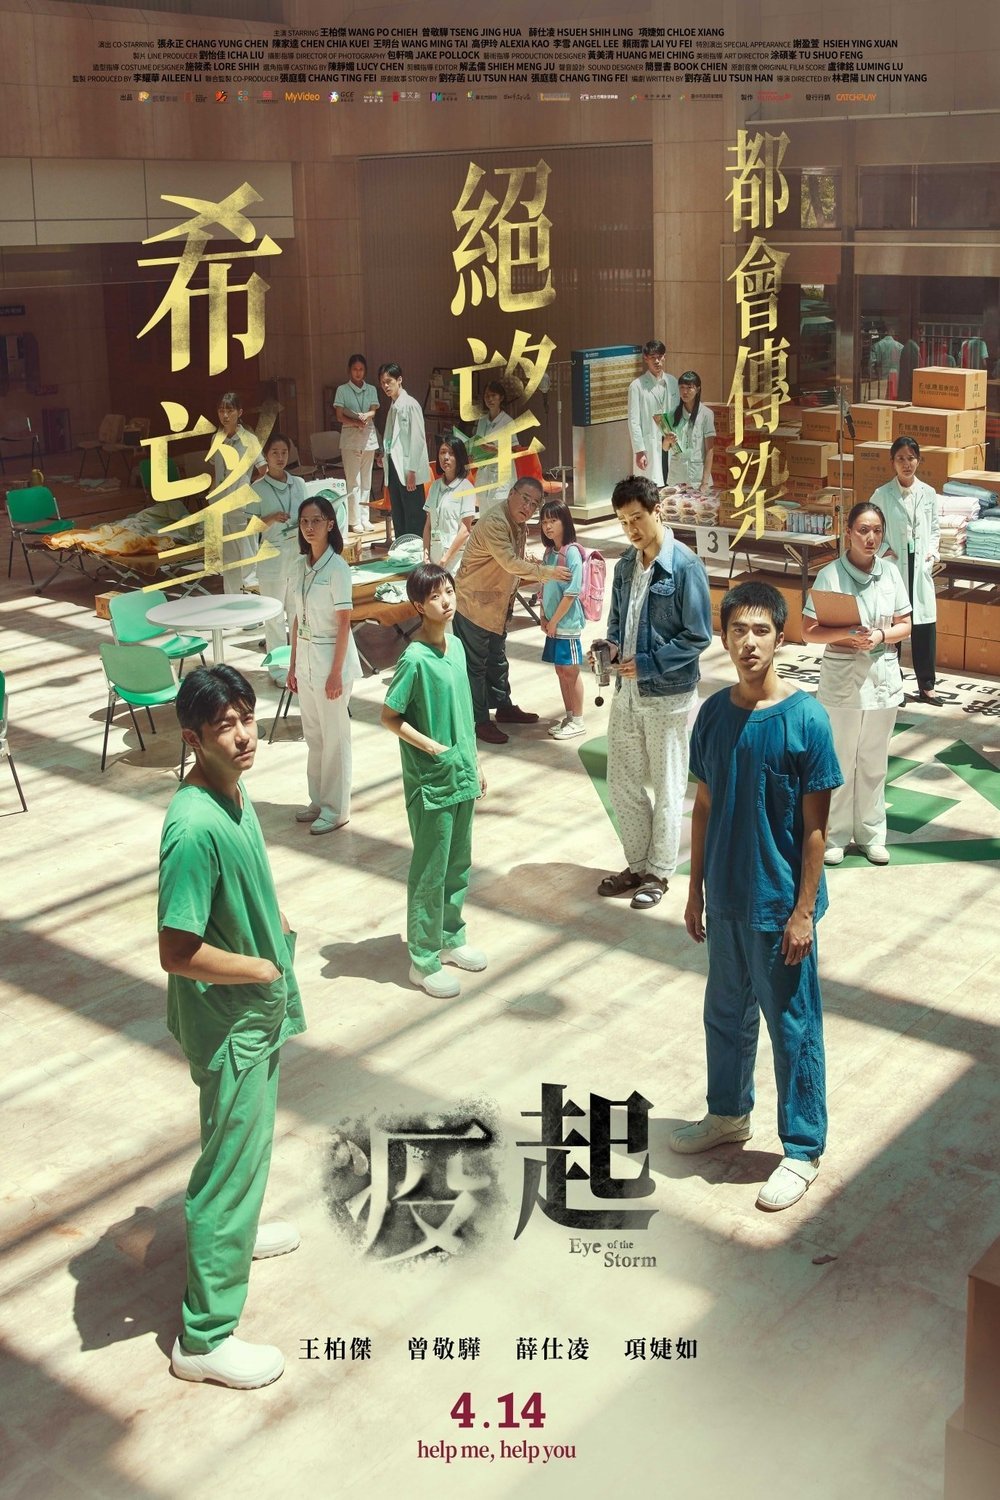 L'affiche originale du film Yi qi en mandarin